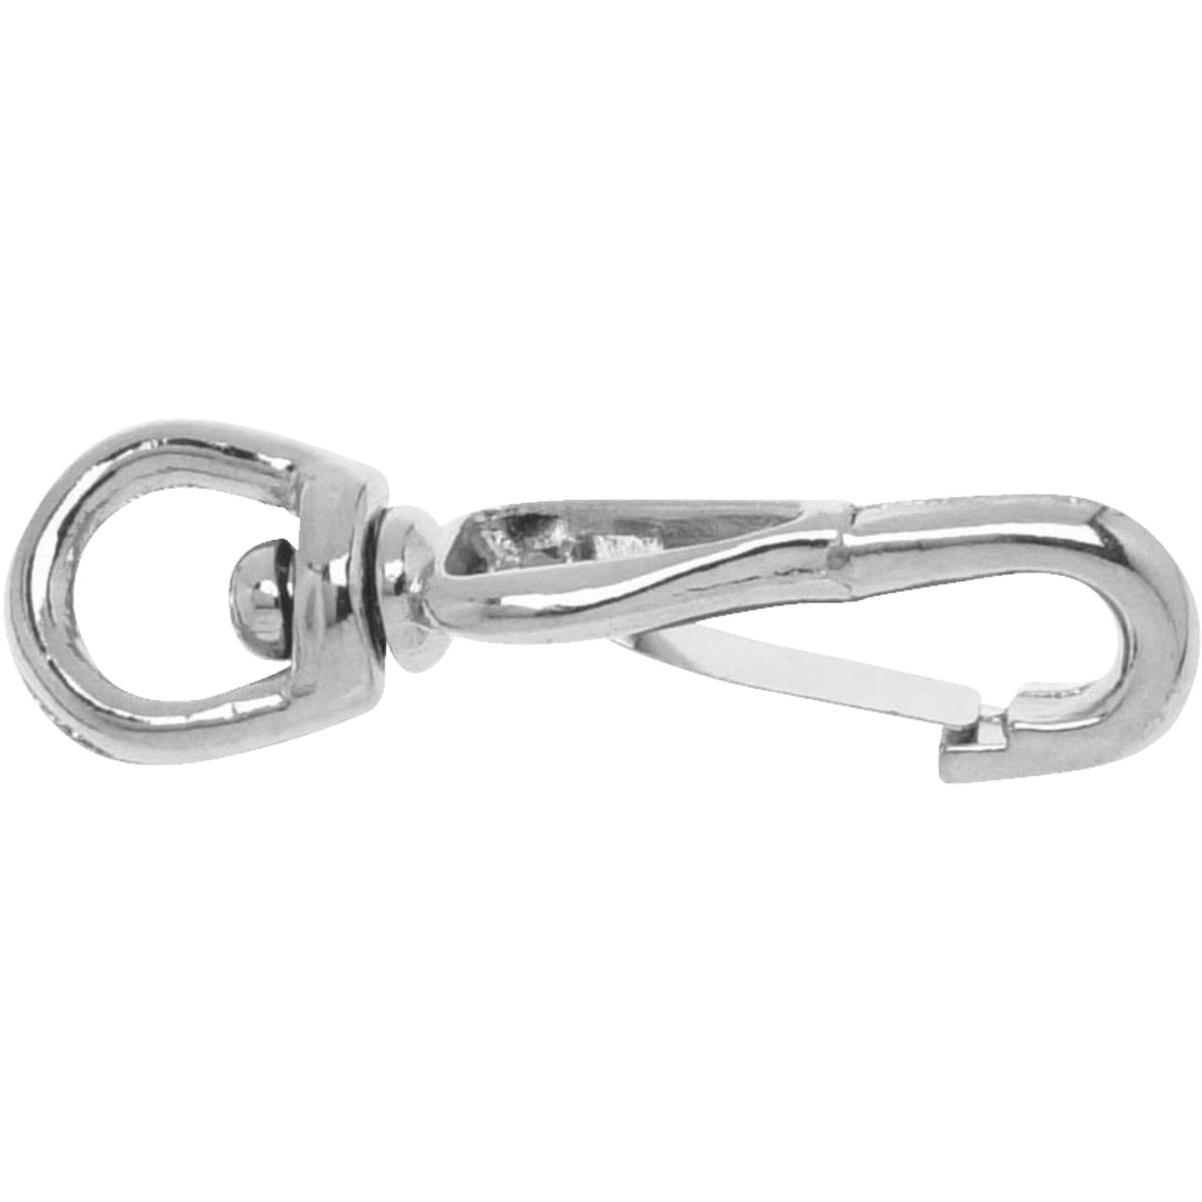 Nite Ize S-Biner Size 1 5 Lb. Capacity S-Clip Key Ring (2-Pack